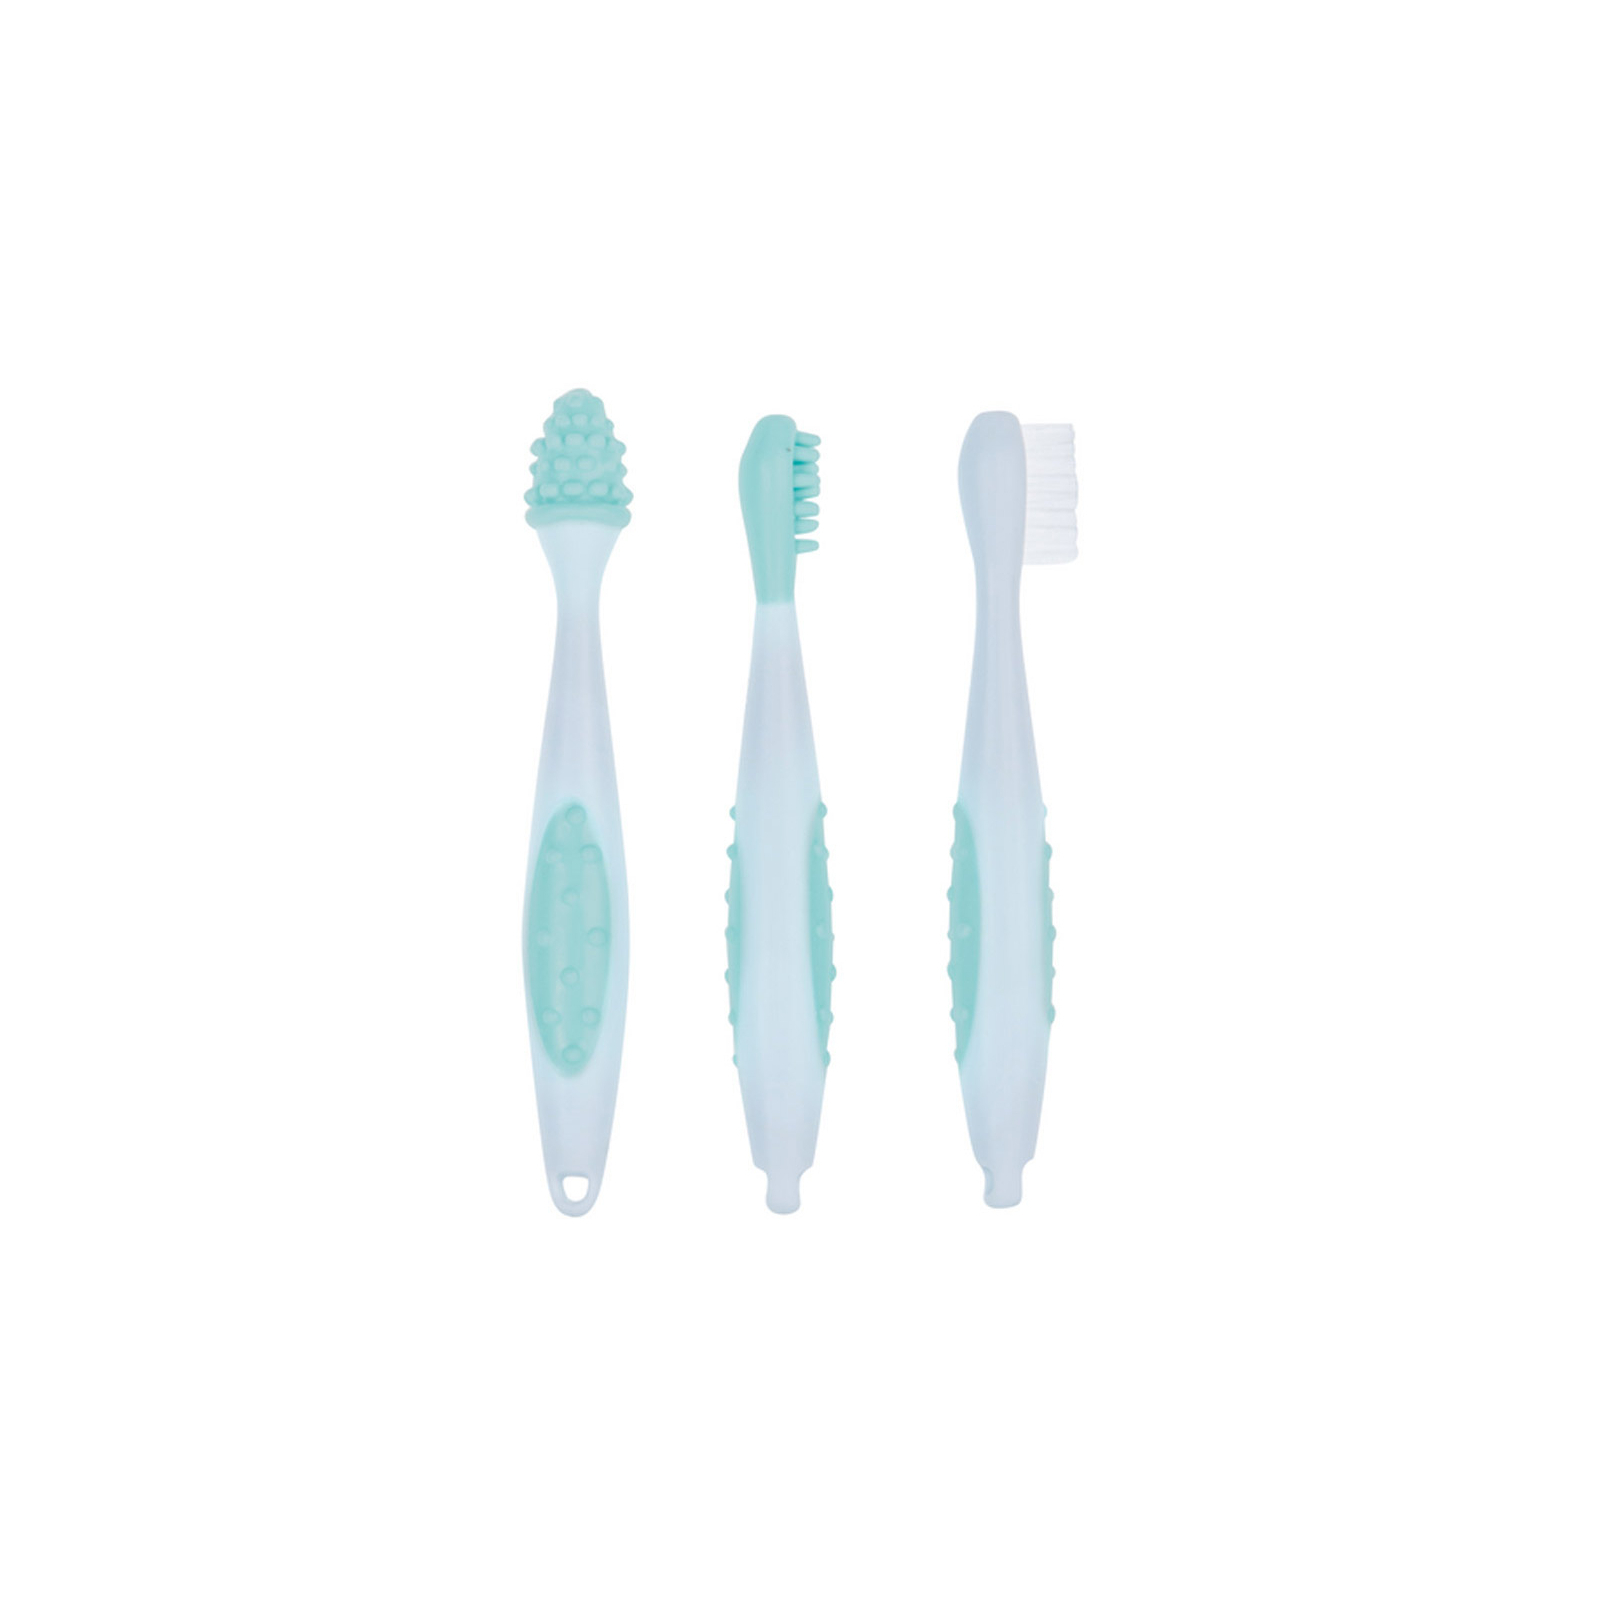 Детская зубная щетка Bebe Confort набор с мешочком для хранения (3106203000) изображение 2